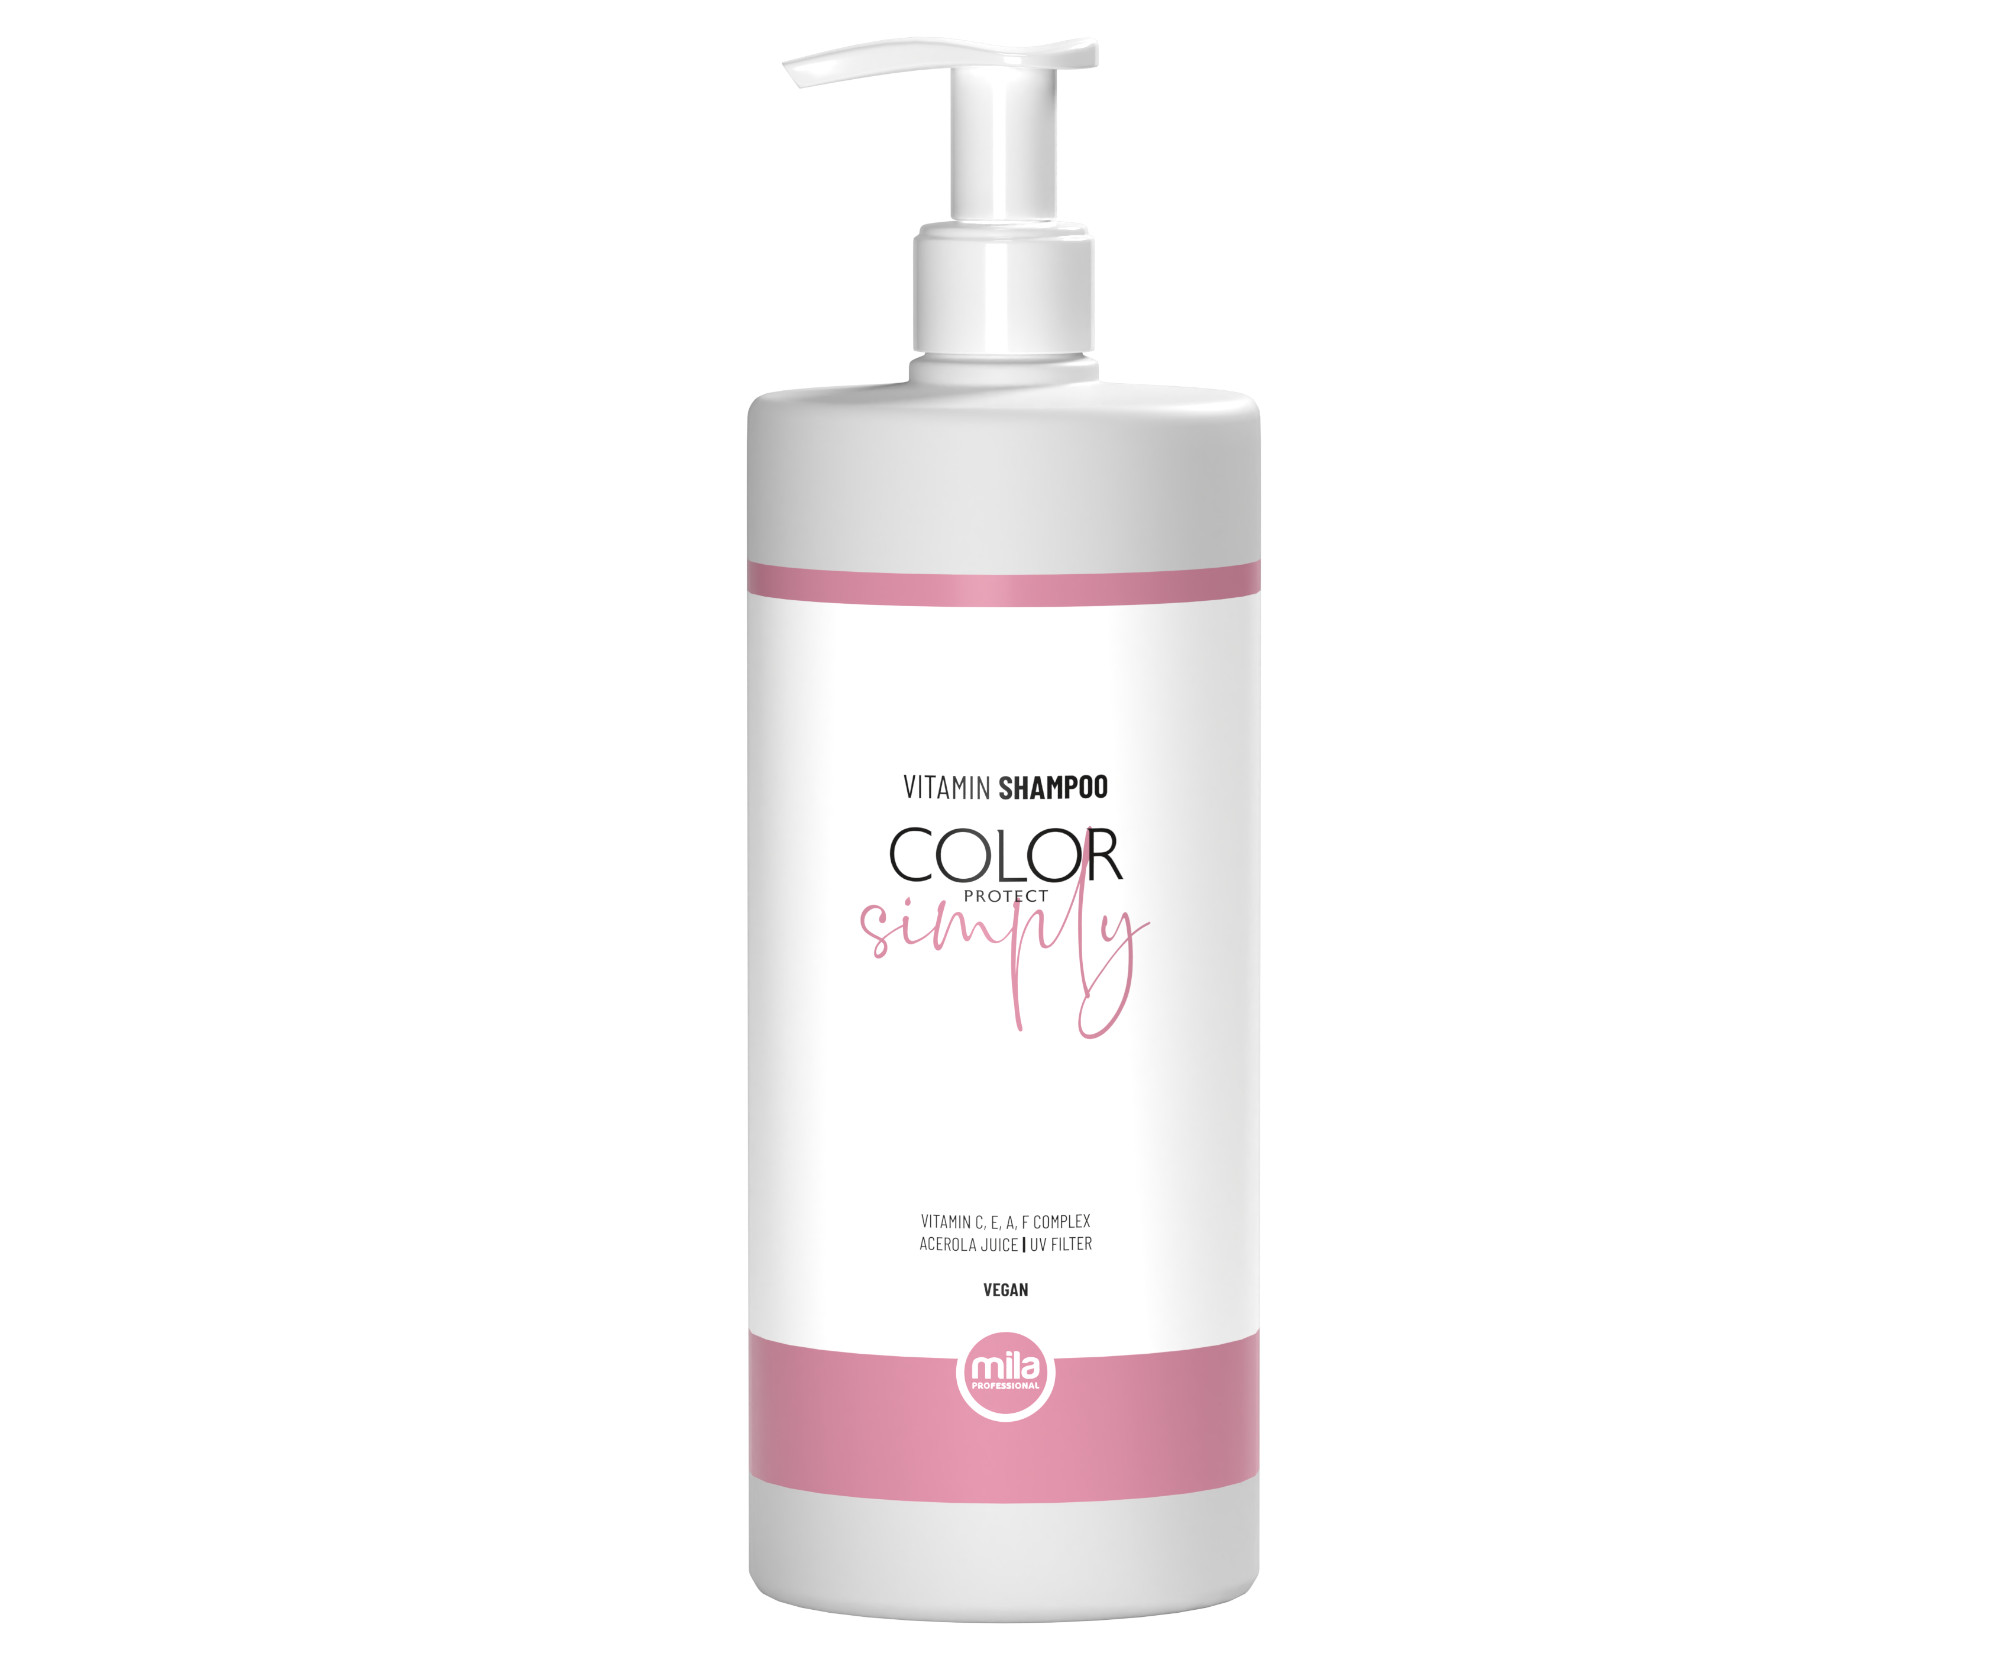 Šampon pro ochranu barvy vlasů Mila Professional Vitamin Shampoo Color Protect Simply - 950 ml (0103040) + dárek zdarma